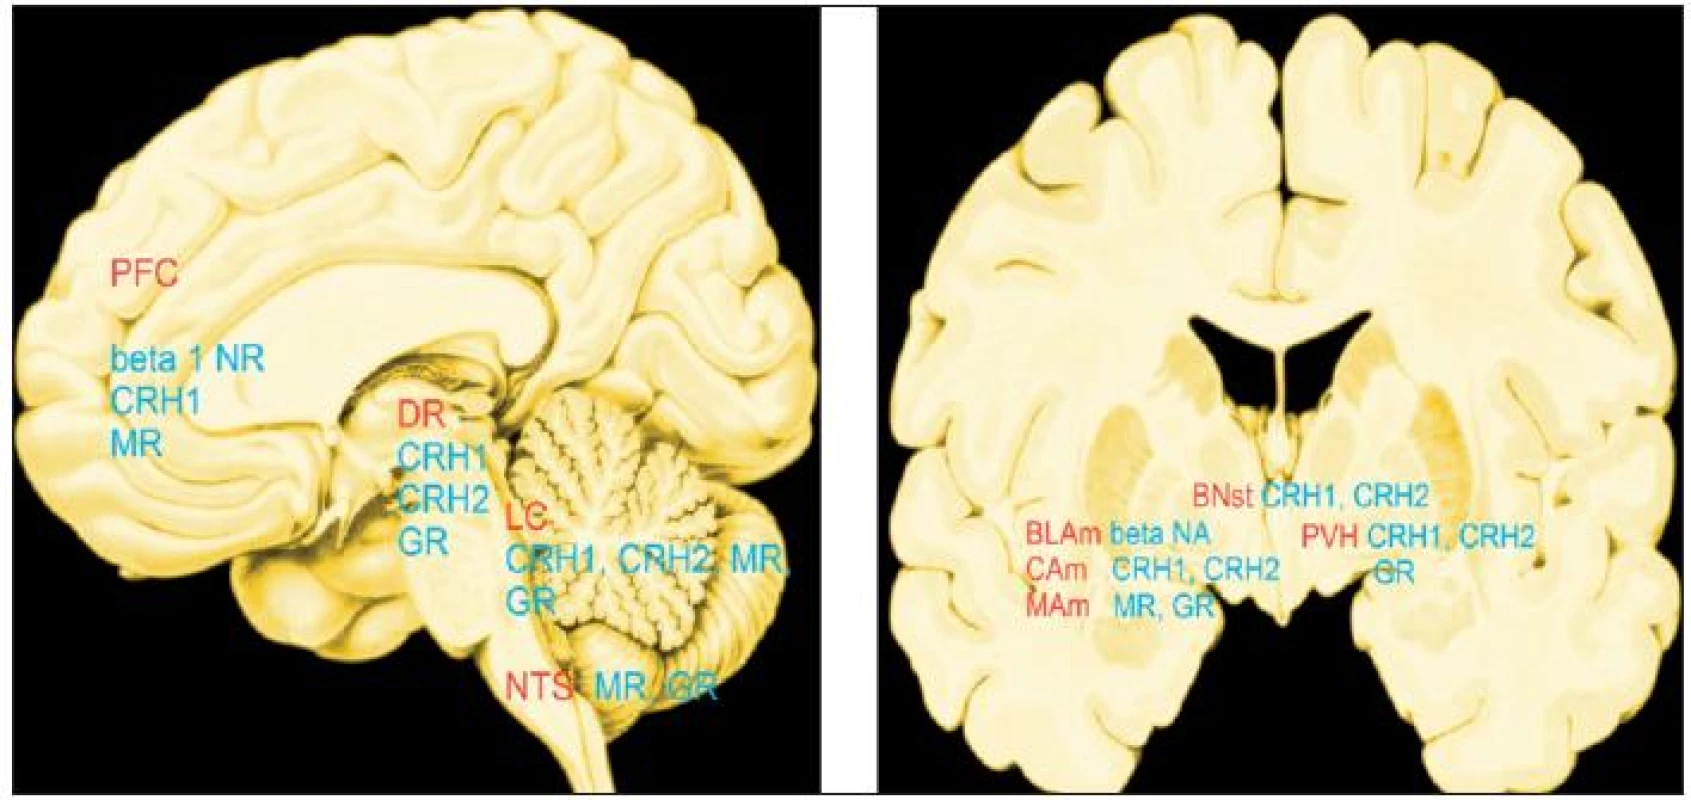 „Hot spots“: místa, kde mozek ovlivňují stresové mediátory v největší míře.
Červeně: PFC - prefrontální kůra, DR - dorzální raphé, LC - locus coeruleus, NTS - nc.tractus solitarius, BLAM CAM, MAM - bazolaterální, centrální, mediální jádro amygdaly, BNst - bed nucleus stria terminalis, PVH - paraventrikulární jádro hypotalamu
Modře: beta 1 NR - beta 1 noradrenergní, CRH1 - hormon (faktor) uvolňující kortikotropin 1, CRH2 - hormon (faktor) uvolňující kortikotropin 2, MR - receptory mineralokortikoidů,GR - receptory glukokortikoidů
